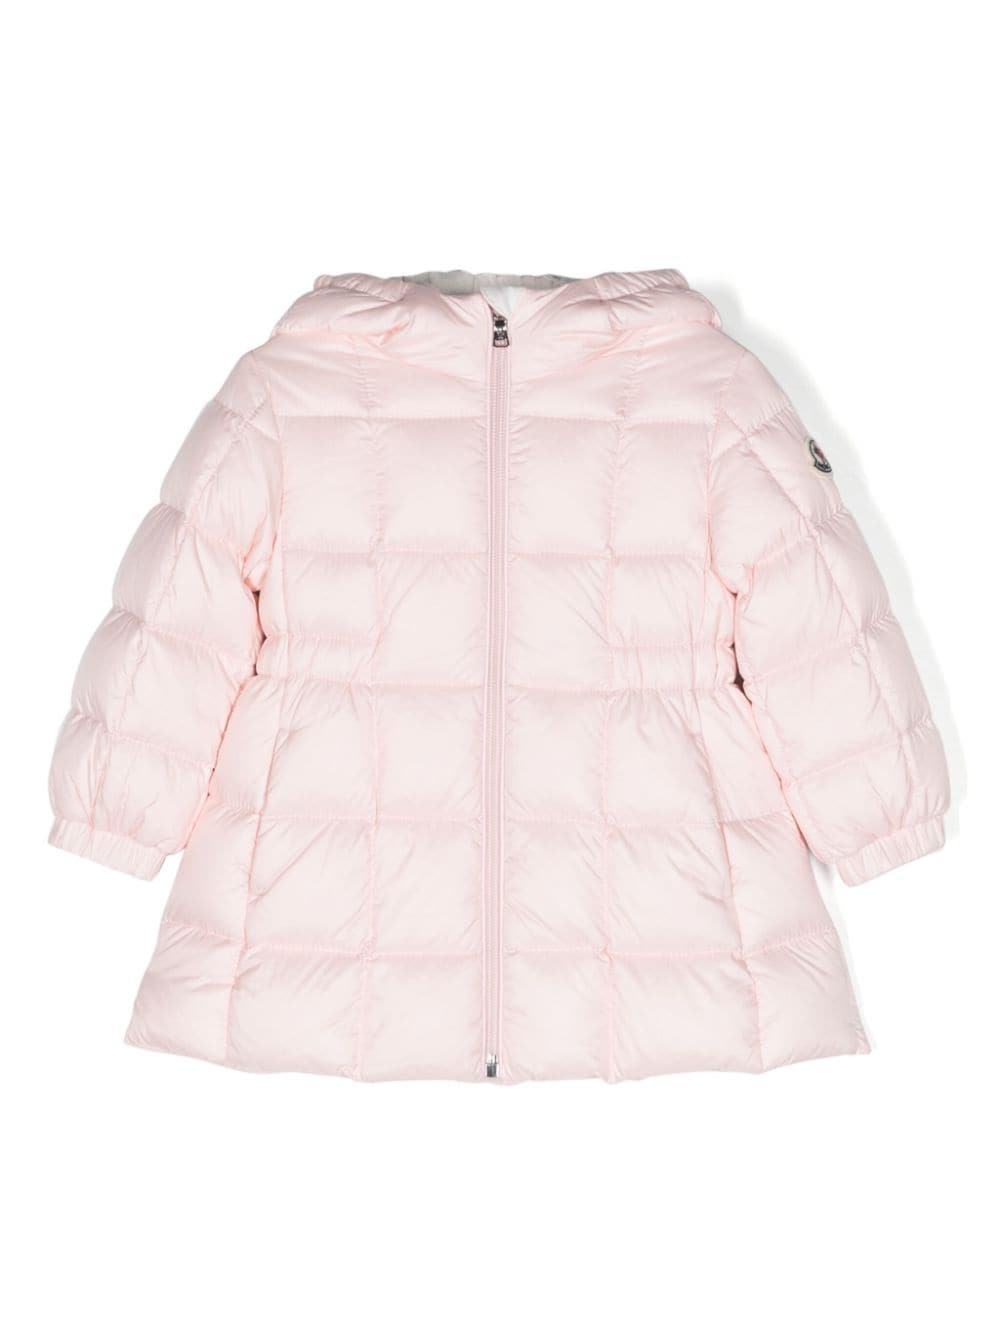 MONCLER BABY Girls Anya Long Padded Parka Jacket Pink - MAISONDEFASHION.COM